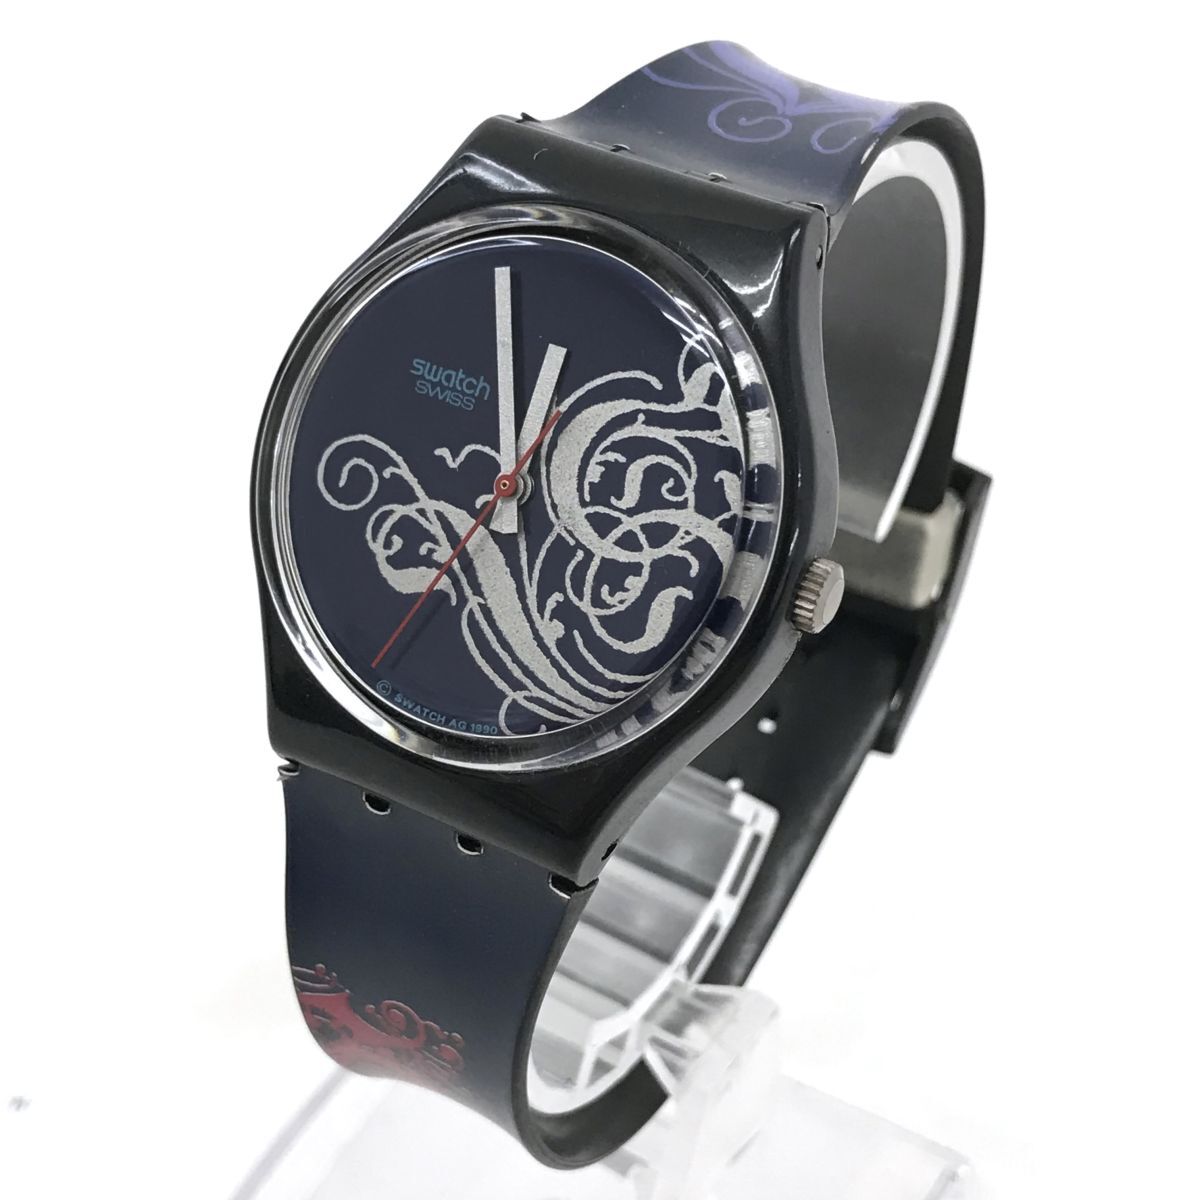 Swatch スウォッチ Tristan 腕時計 GB135 クオーツ コレクション コレクター おしゃれ カジュアル イラスト アート 格好良い 軽い 軽量_画像2